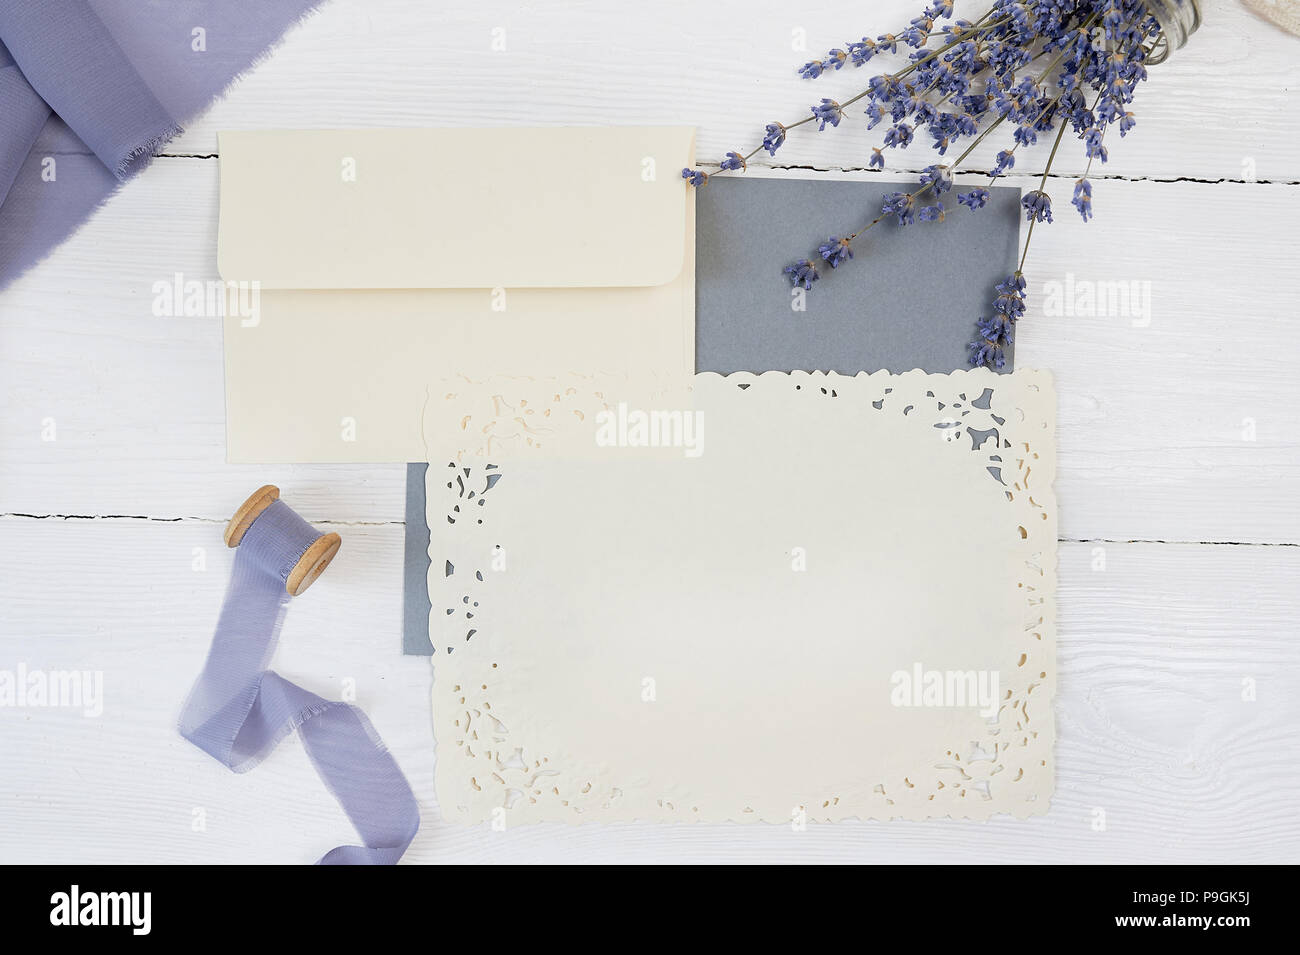 Carte vierge blanche, enveloppe et ruban sur fond de tissu bleu et rose avec des fleurs de lavande sur un fond blanc. Immersive avec enveloppe et carte vierge. Mise à plat. Vue d'en haut Banque D'Images